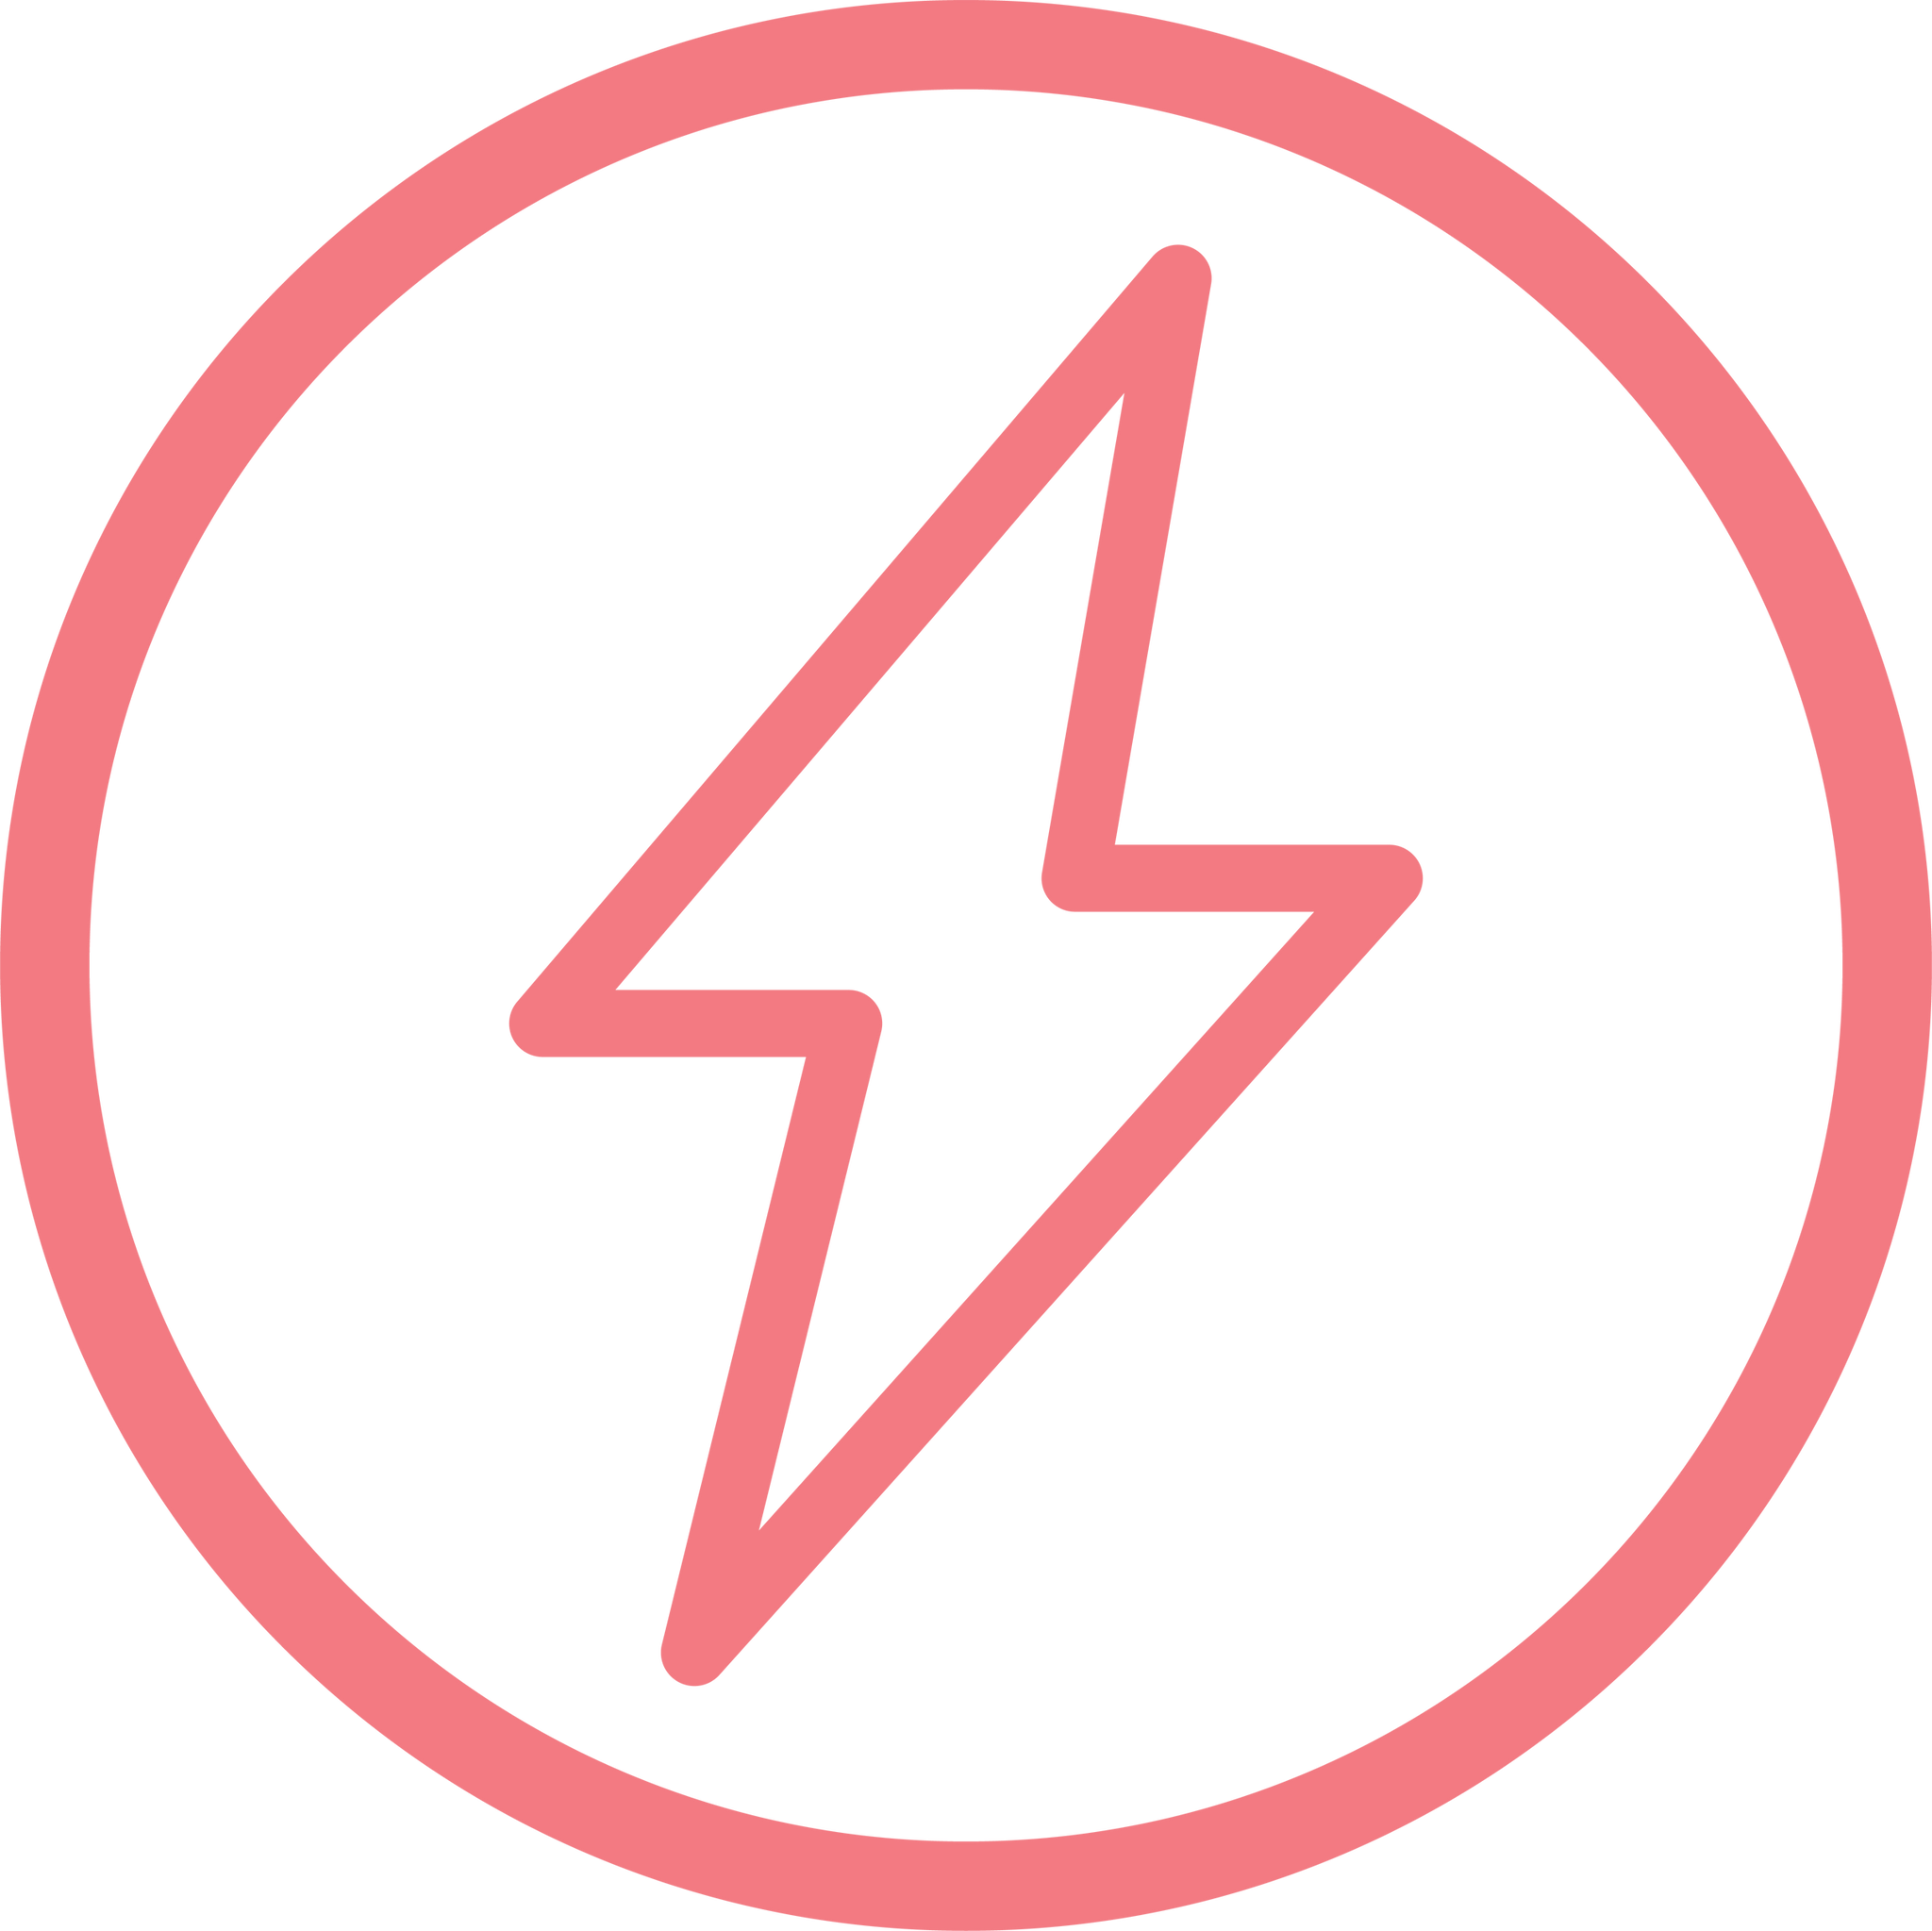 Energy Icon